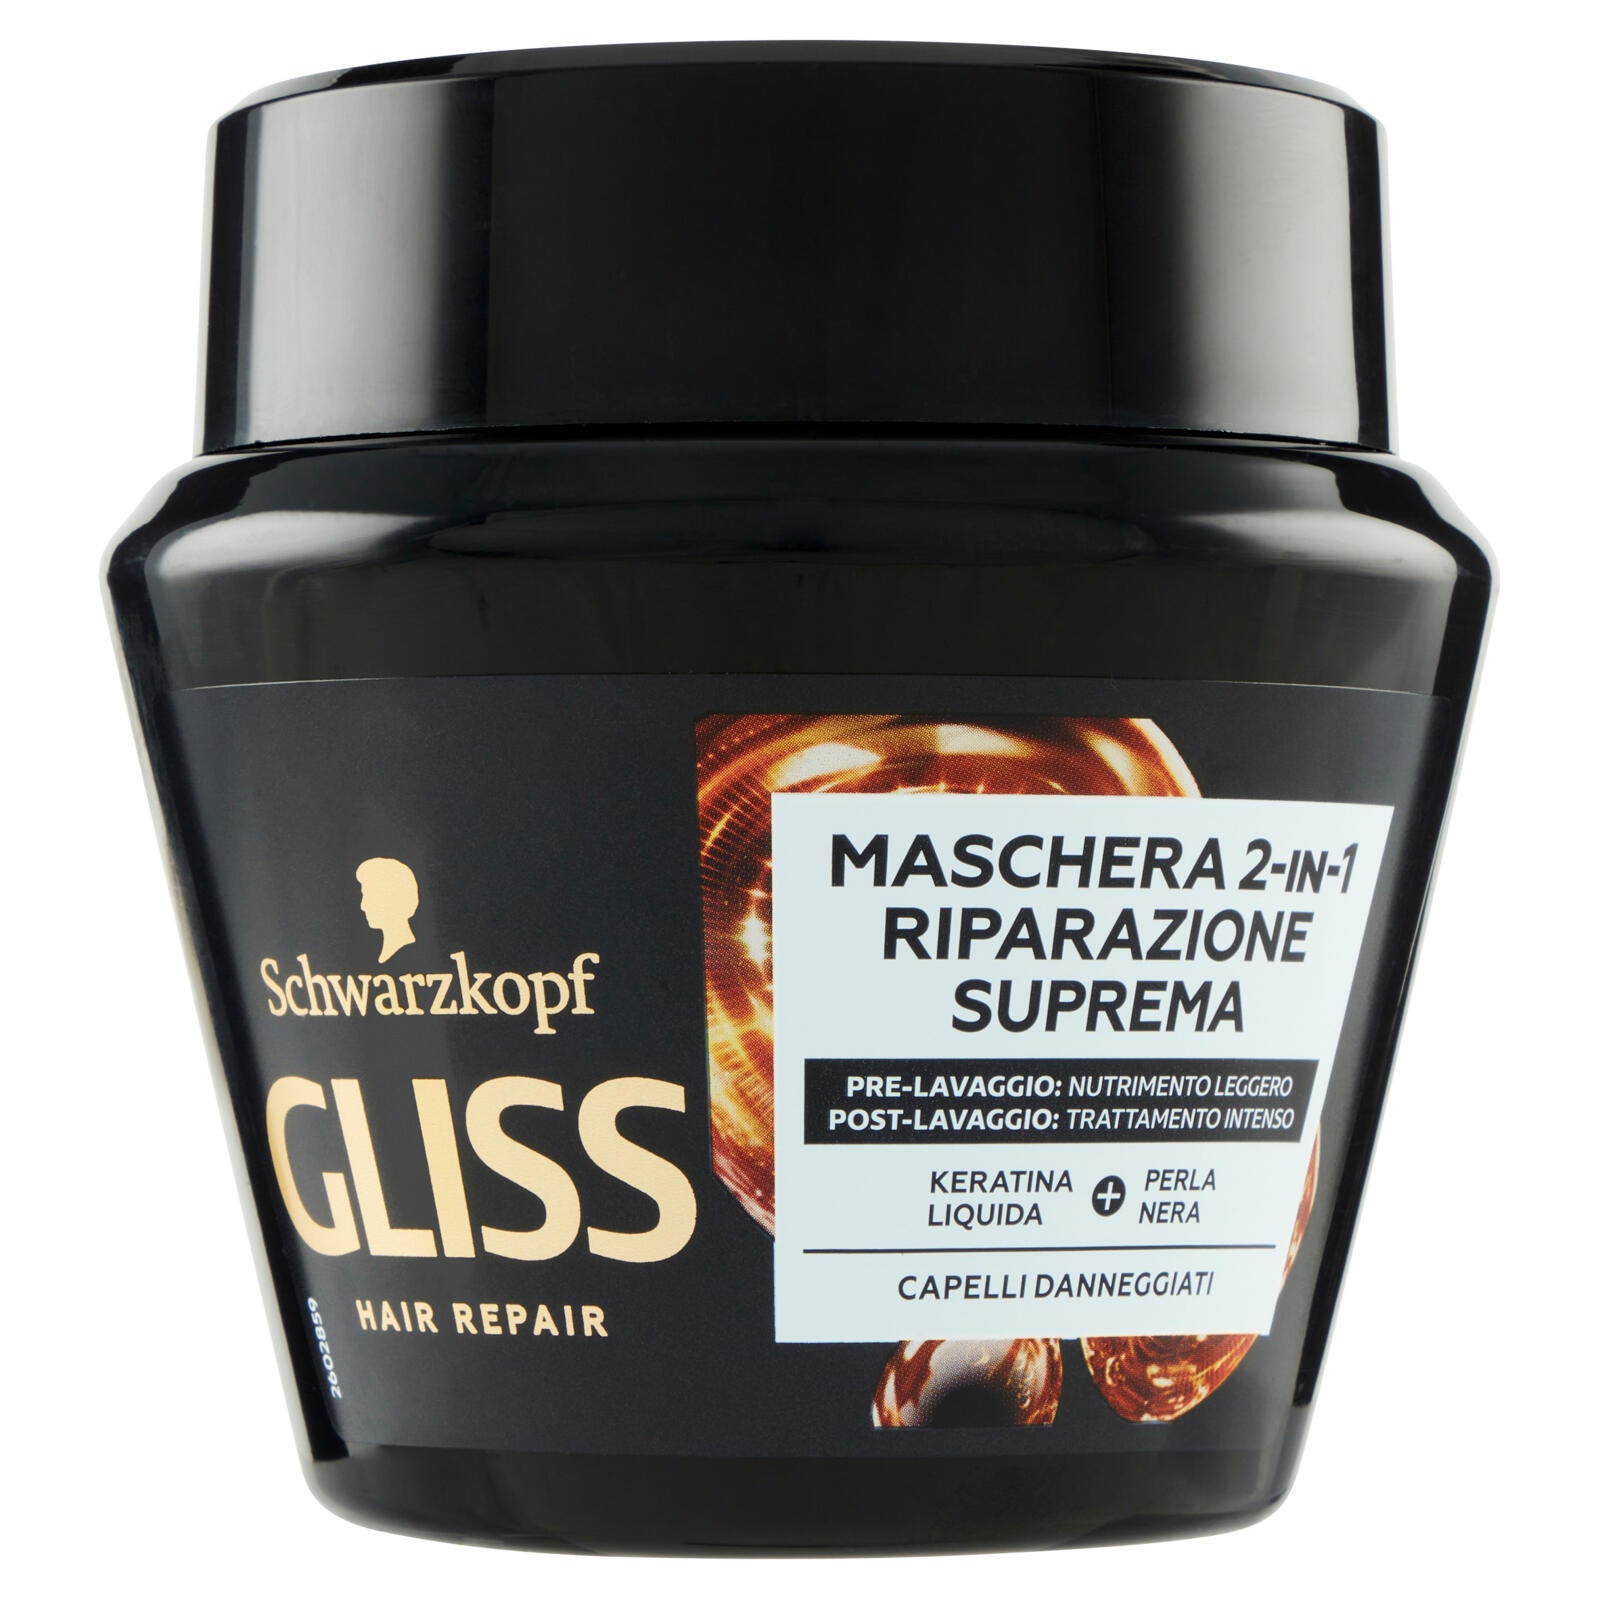 Gliss Hair Repair Maschera 2-in-1 Riparazione Suprema 300 ml